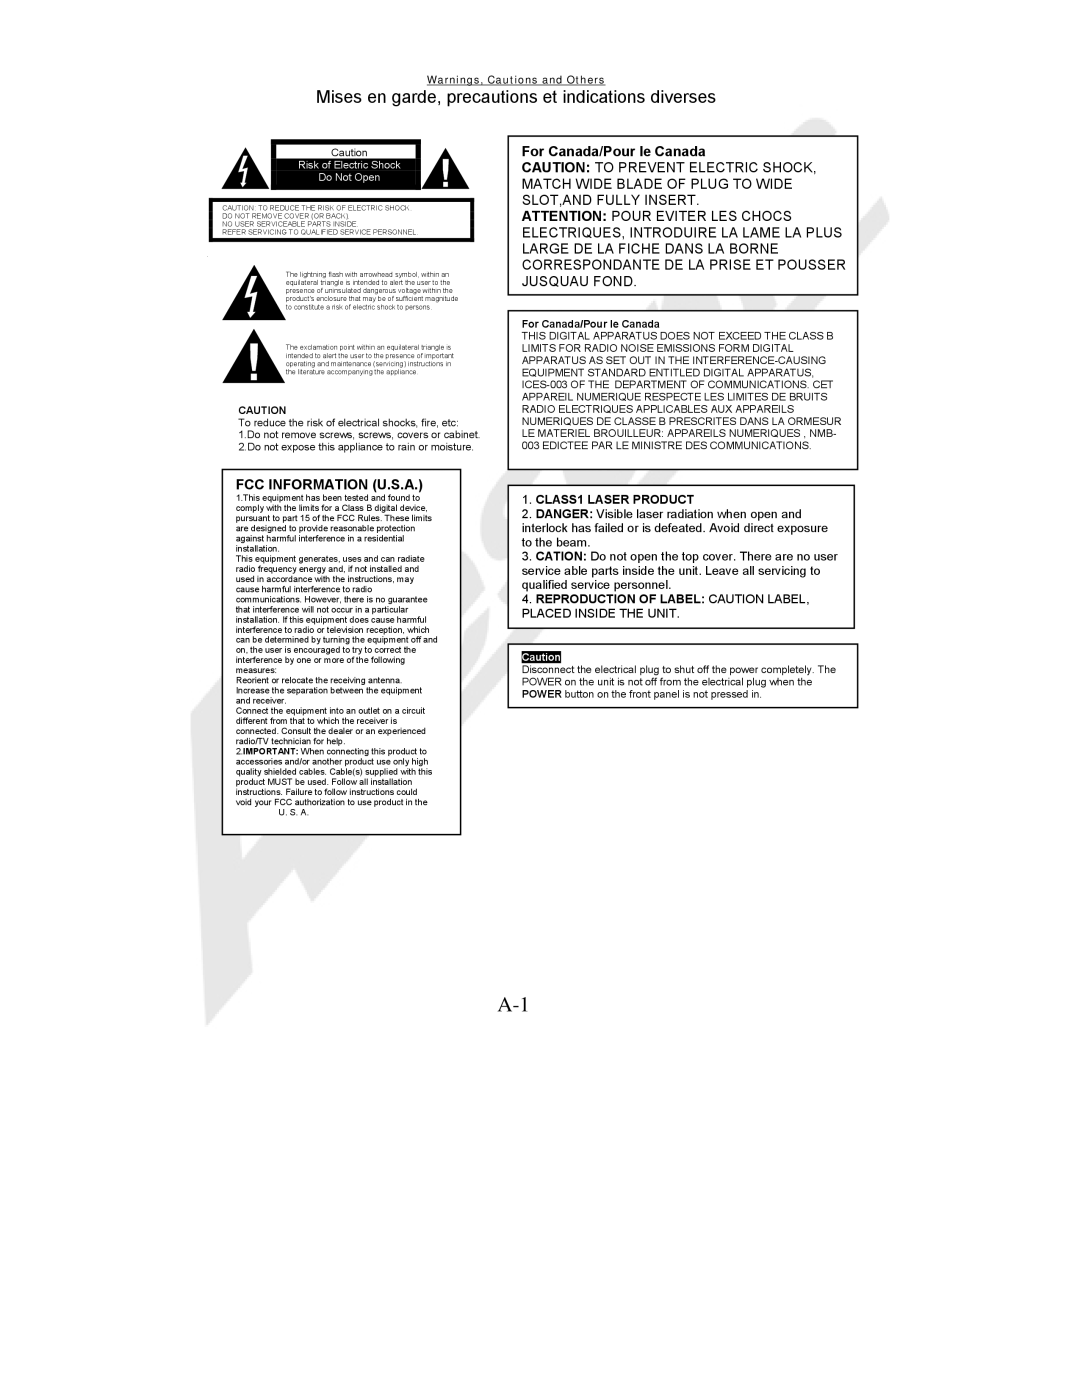 Acesonic BDK-2000 Fcc Information U.S.A, For Canada/Pour le Canada, Mises en garde, precautions et indications diverses 